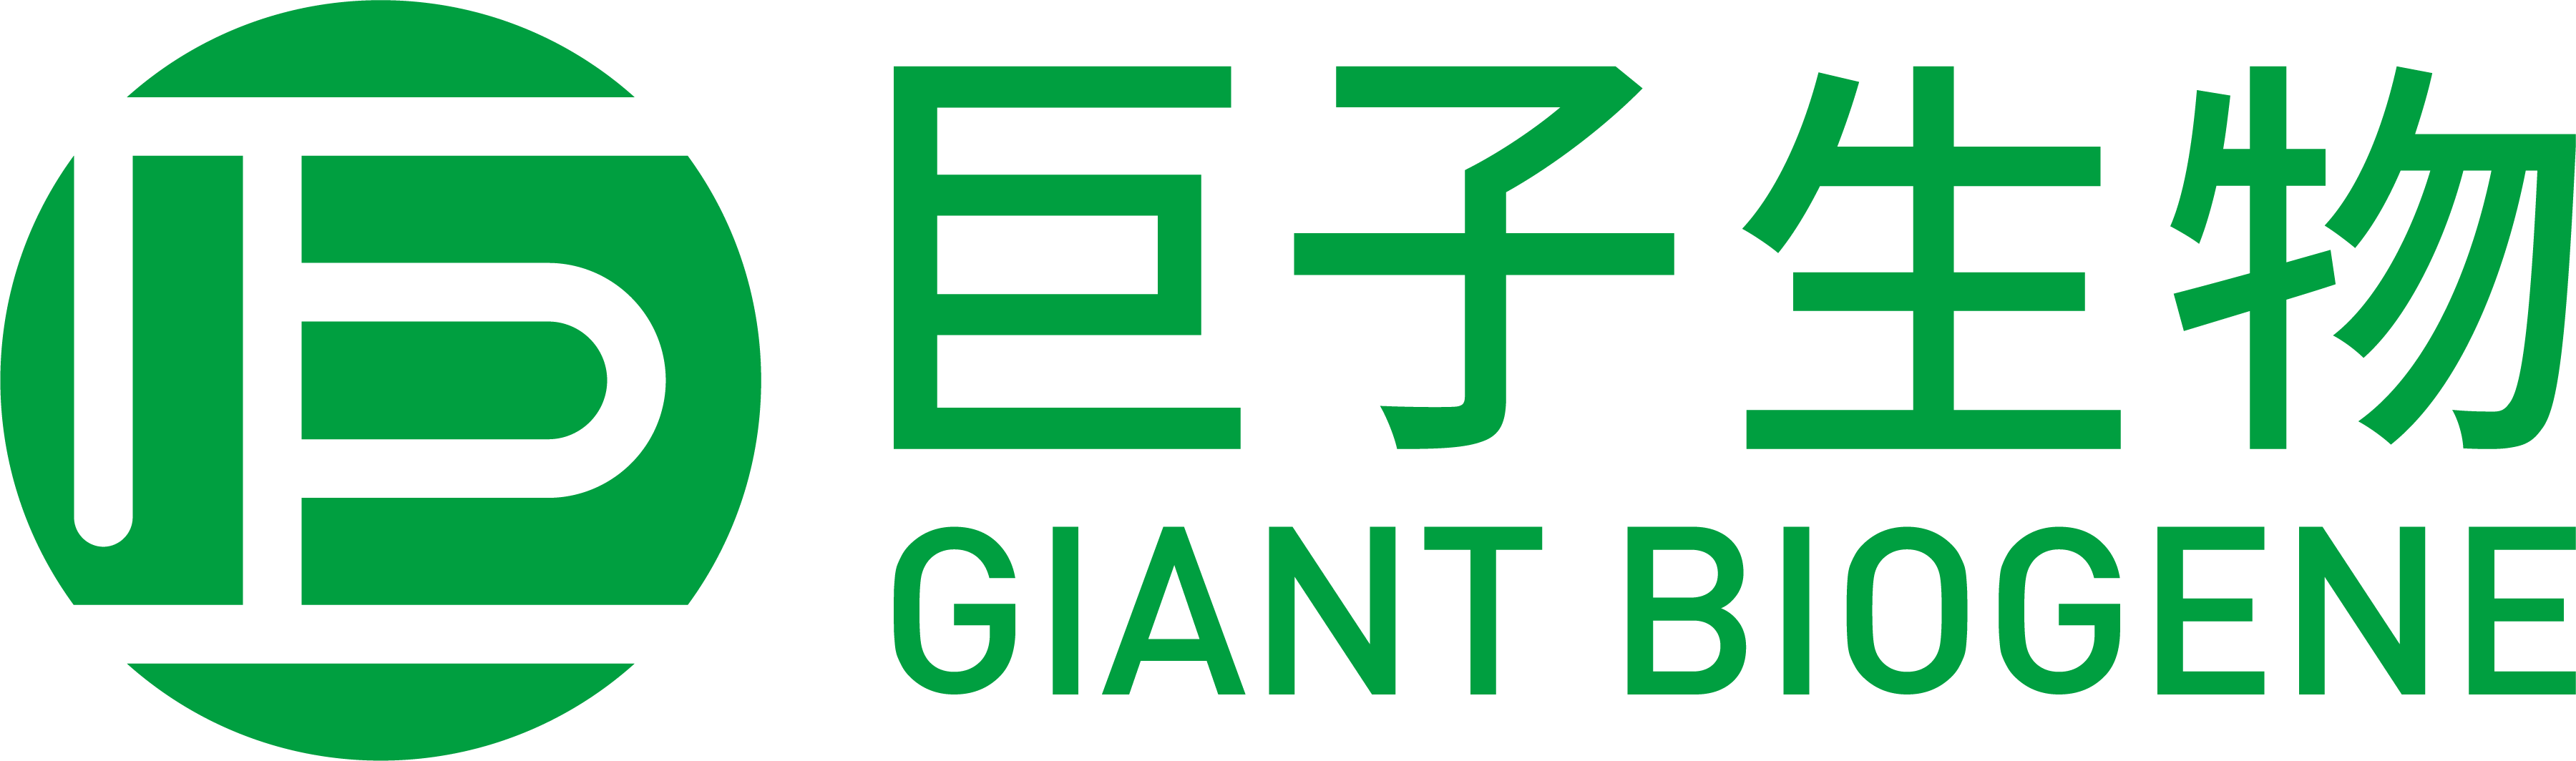 Giant Biogene